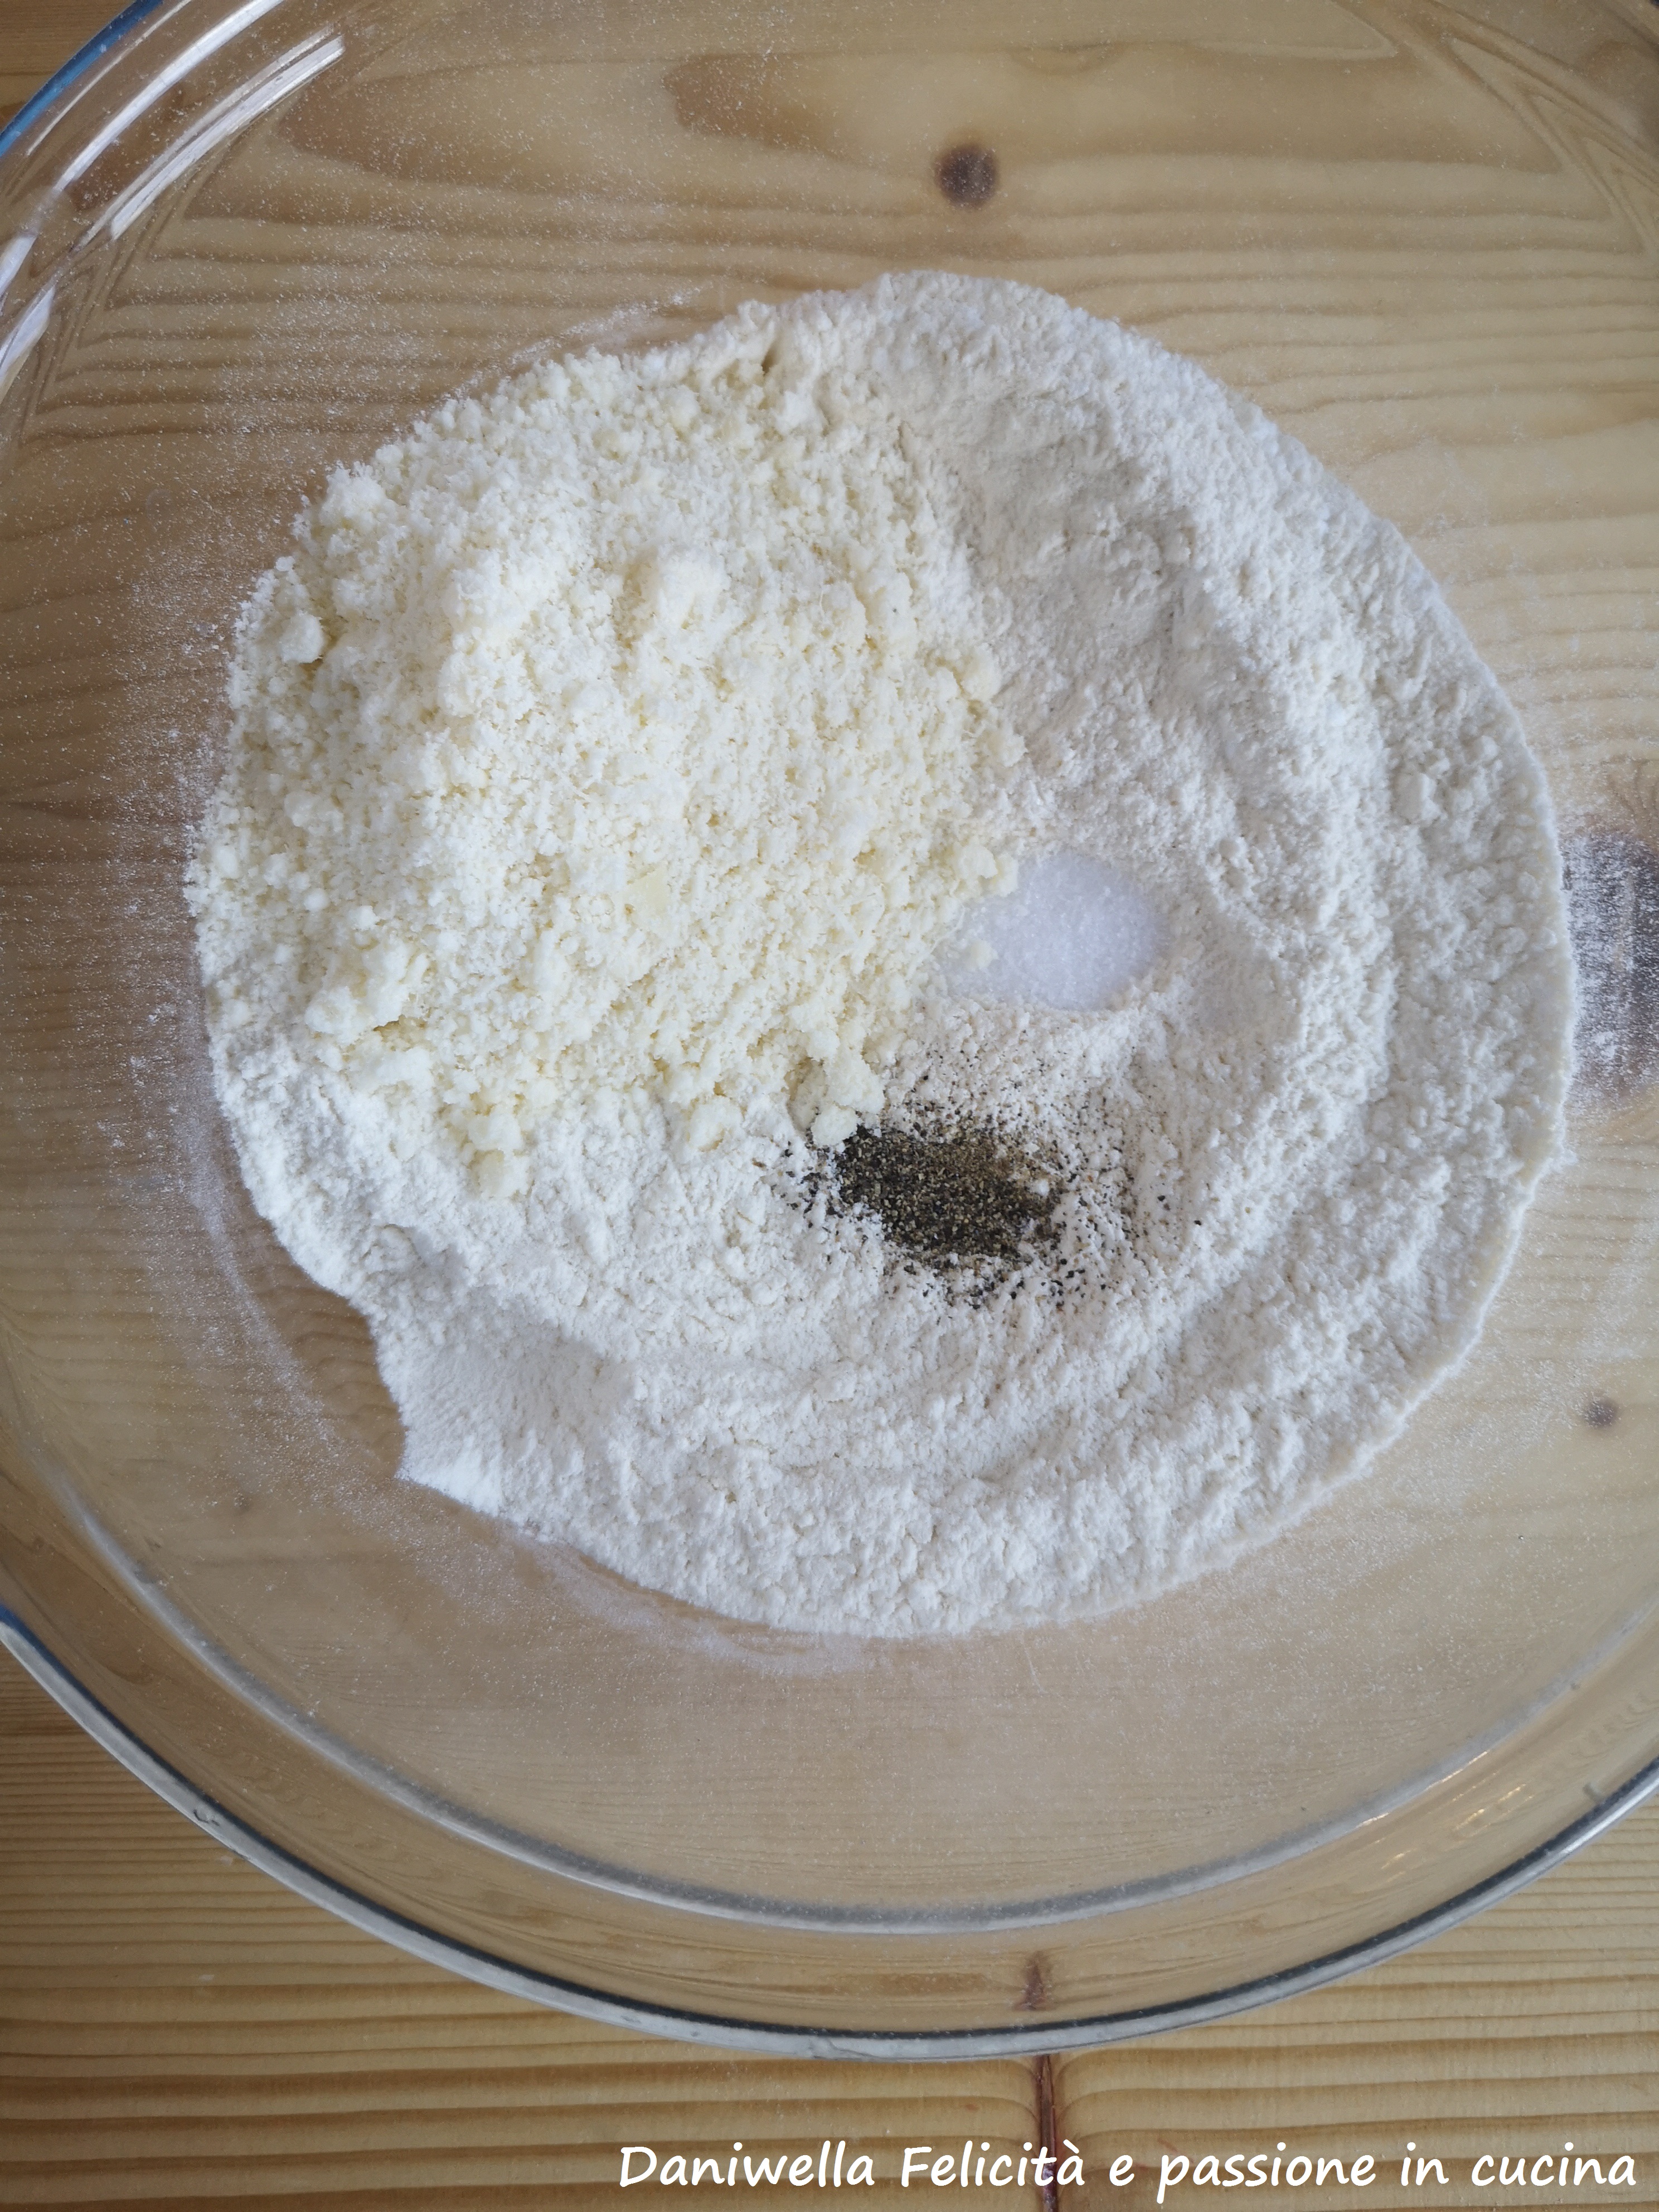 In una ciotola mettete la farina setacciata insieme al lievito, il Parmigiano, il sale e tutte le spezie. Mescolate.